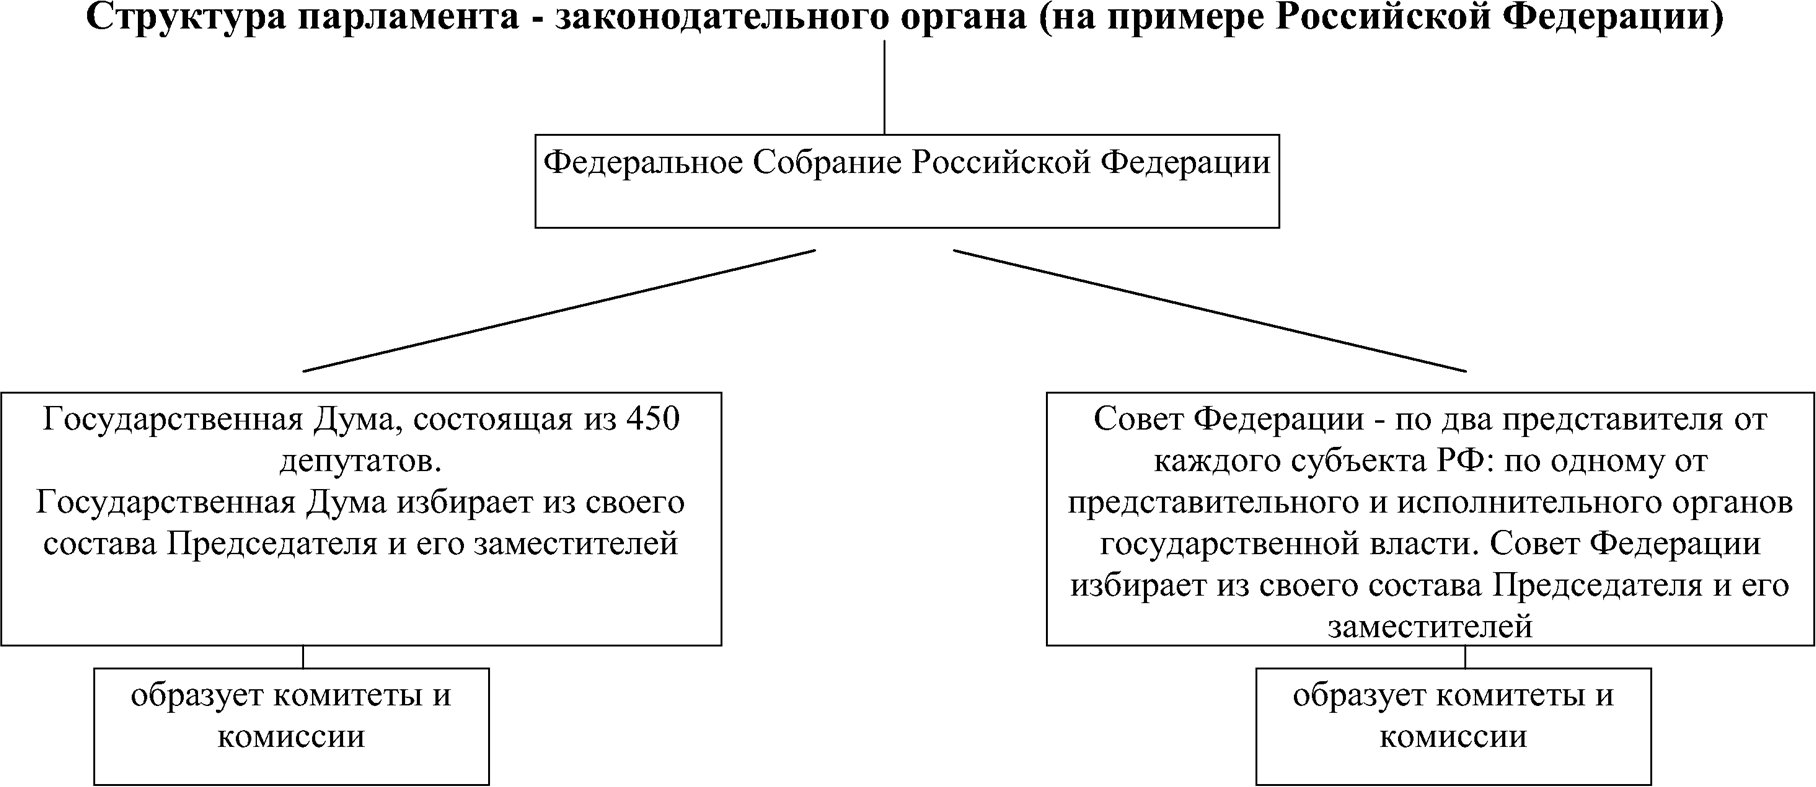 Структура парламента - законодательного органа (на примере Российской Федерации)